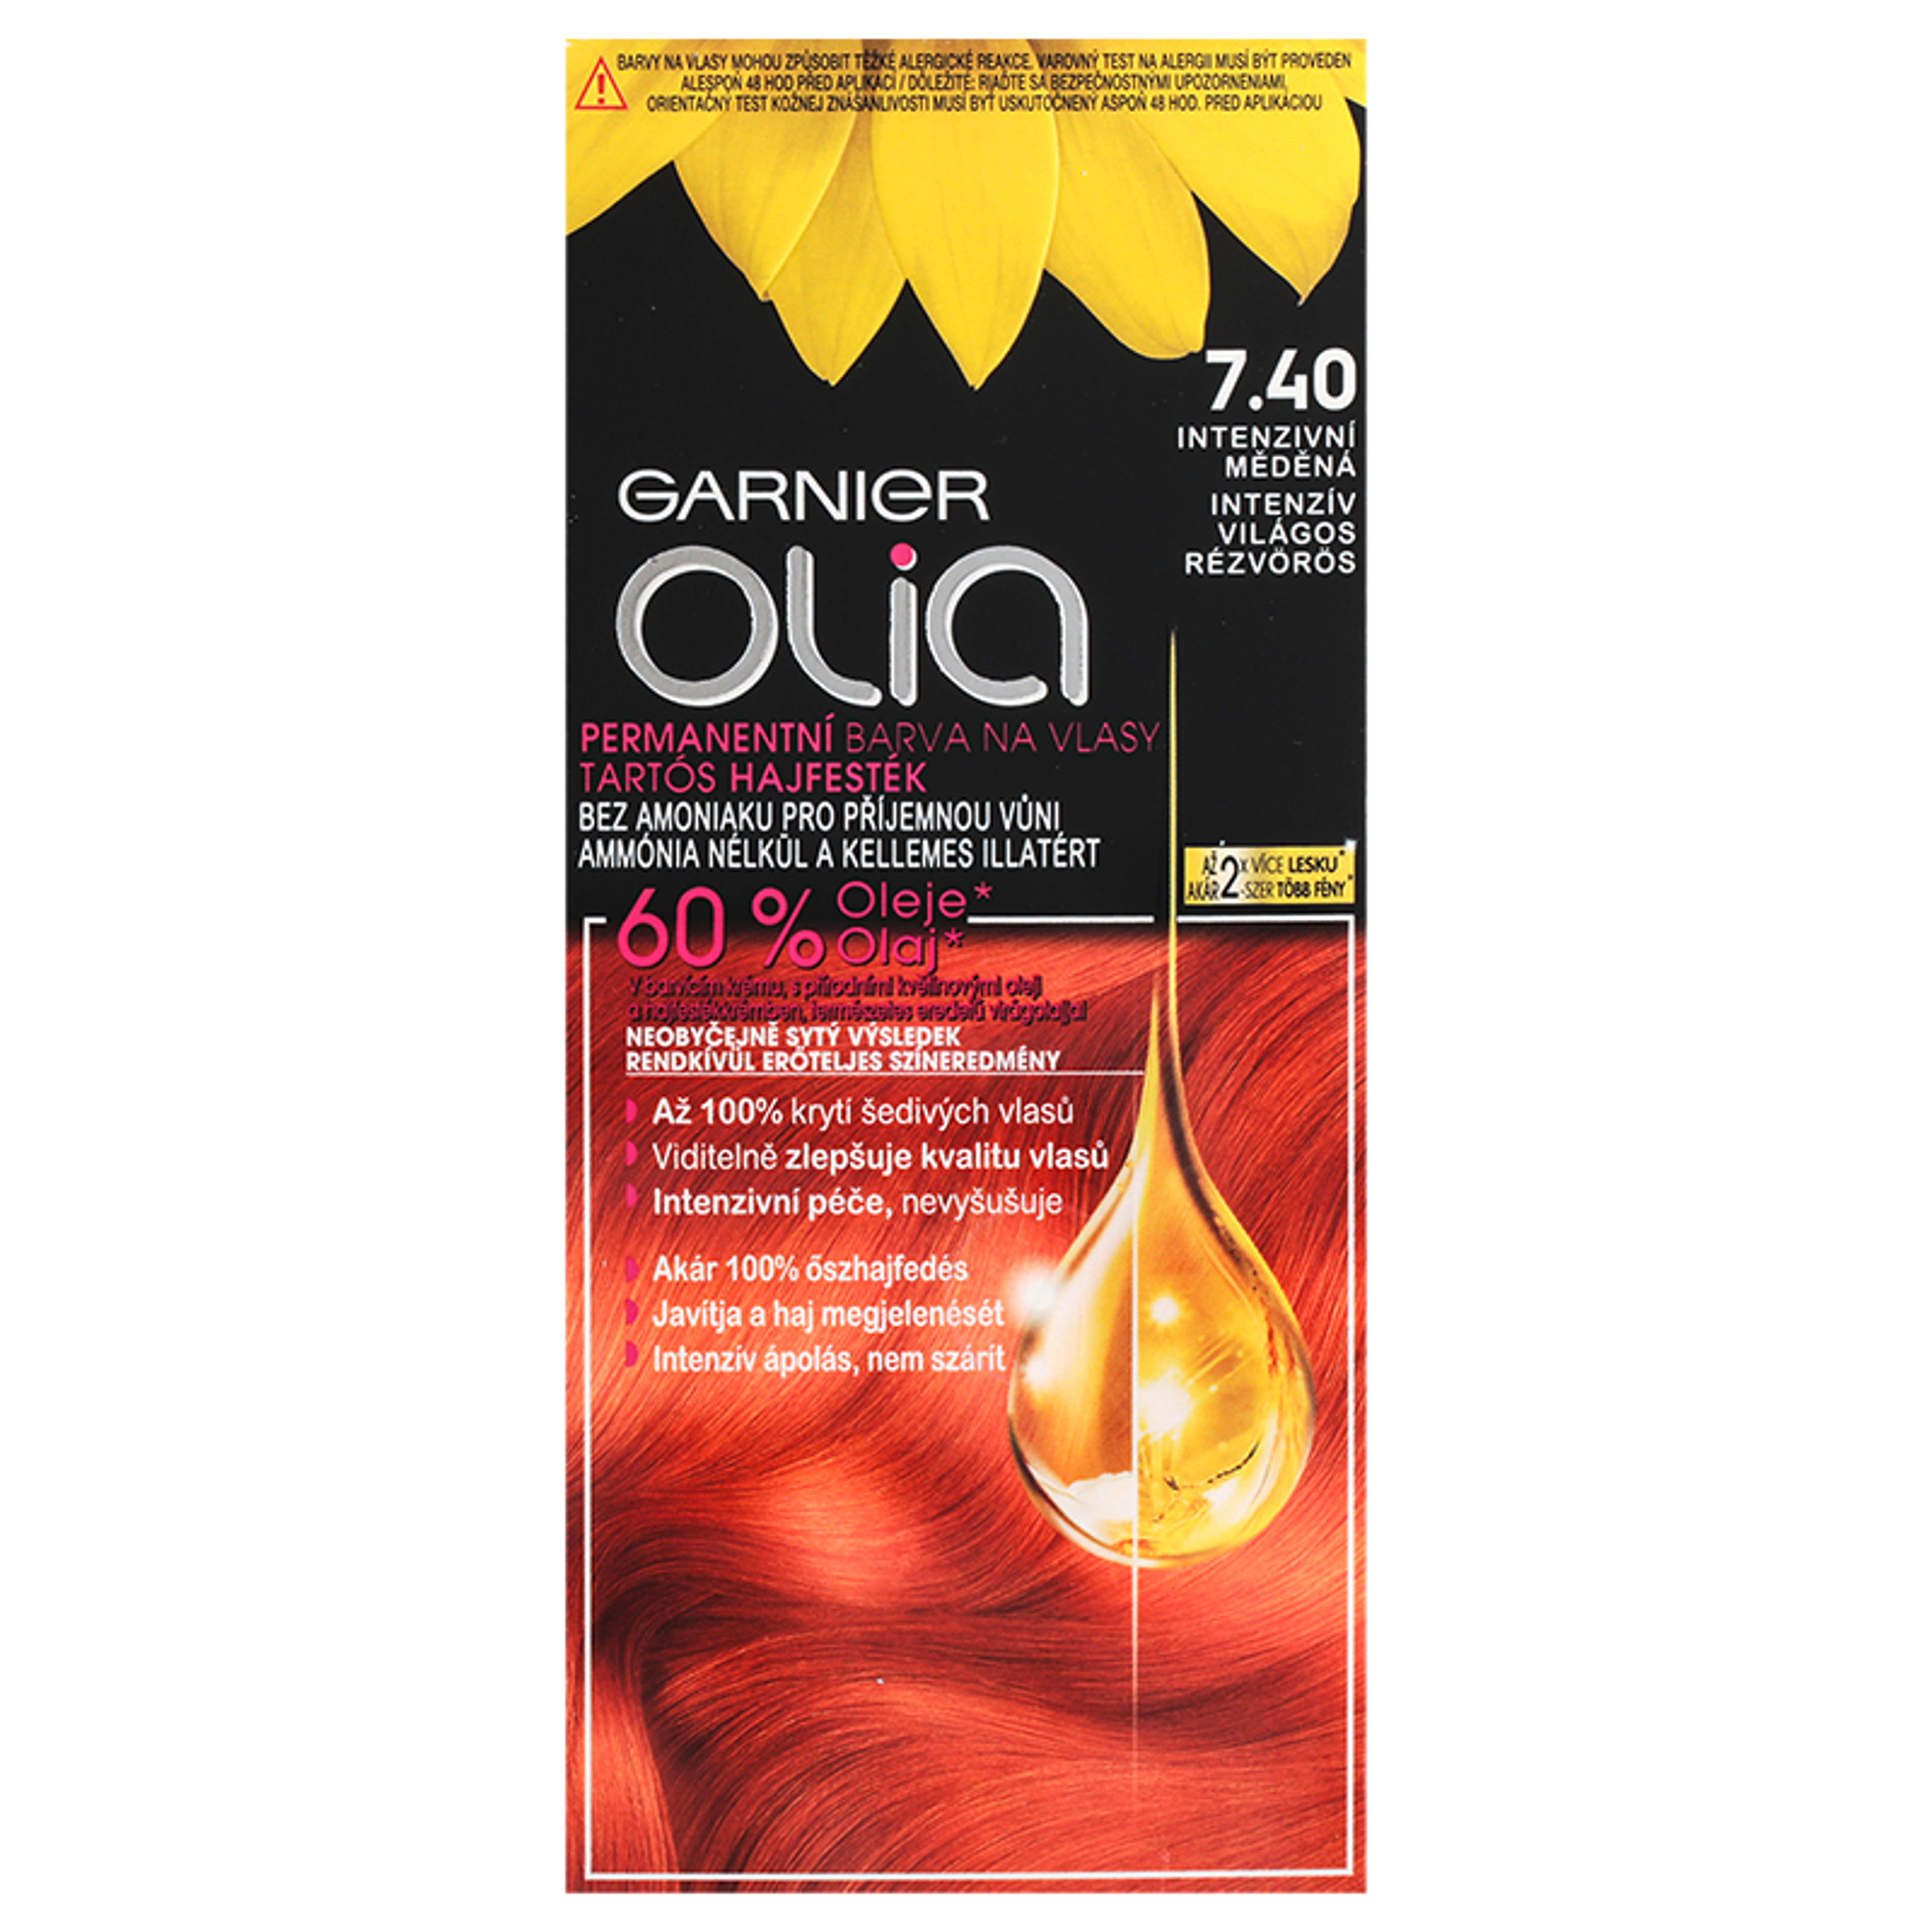 Garnier Olia tartós hajfesték 7.40 Intenzív világos rézvörös - 1 db-1